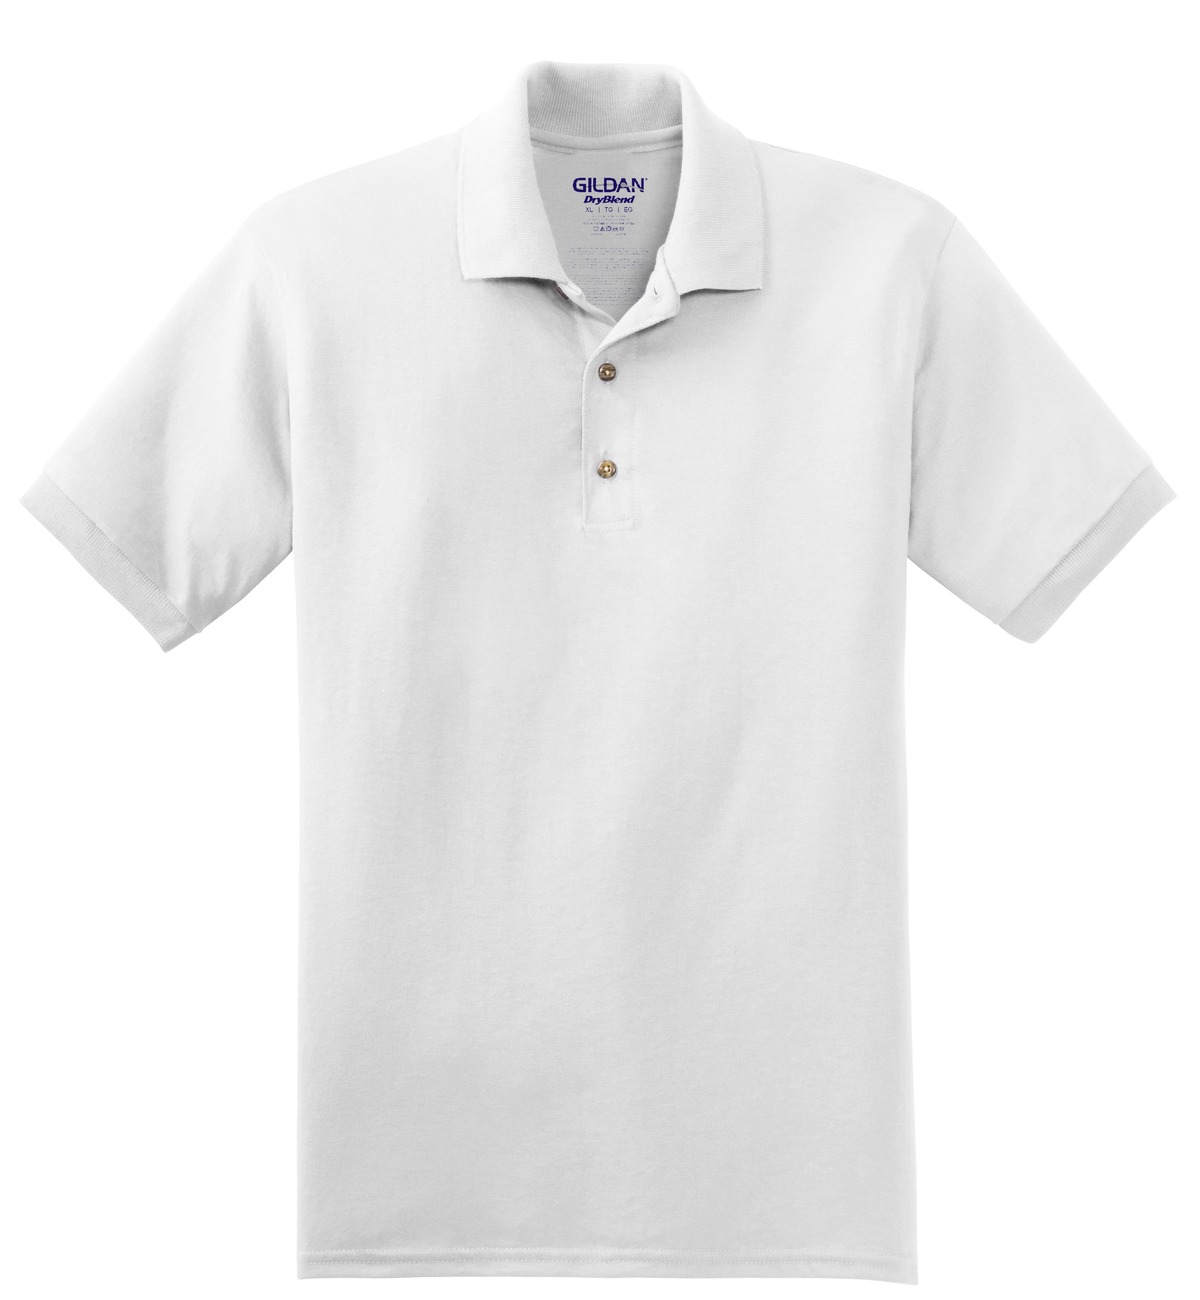 Gildan ® - DryBlend ® 6-Ounce Jersey Knit Sport Shirt. 8800 Questions & Answers